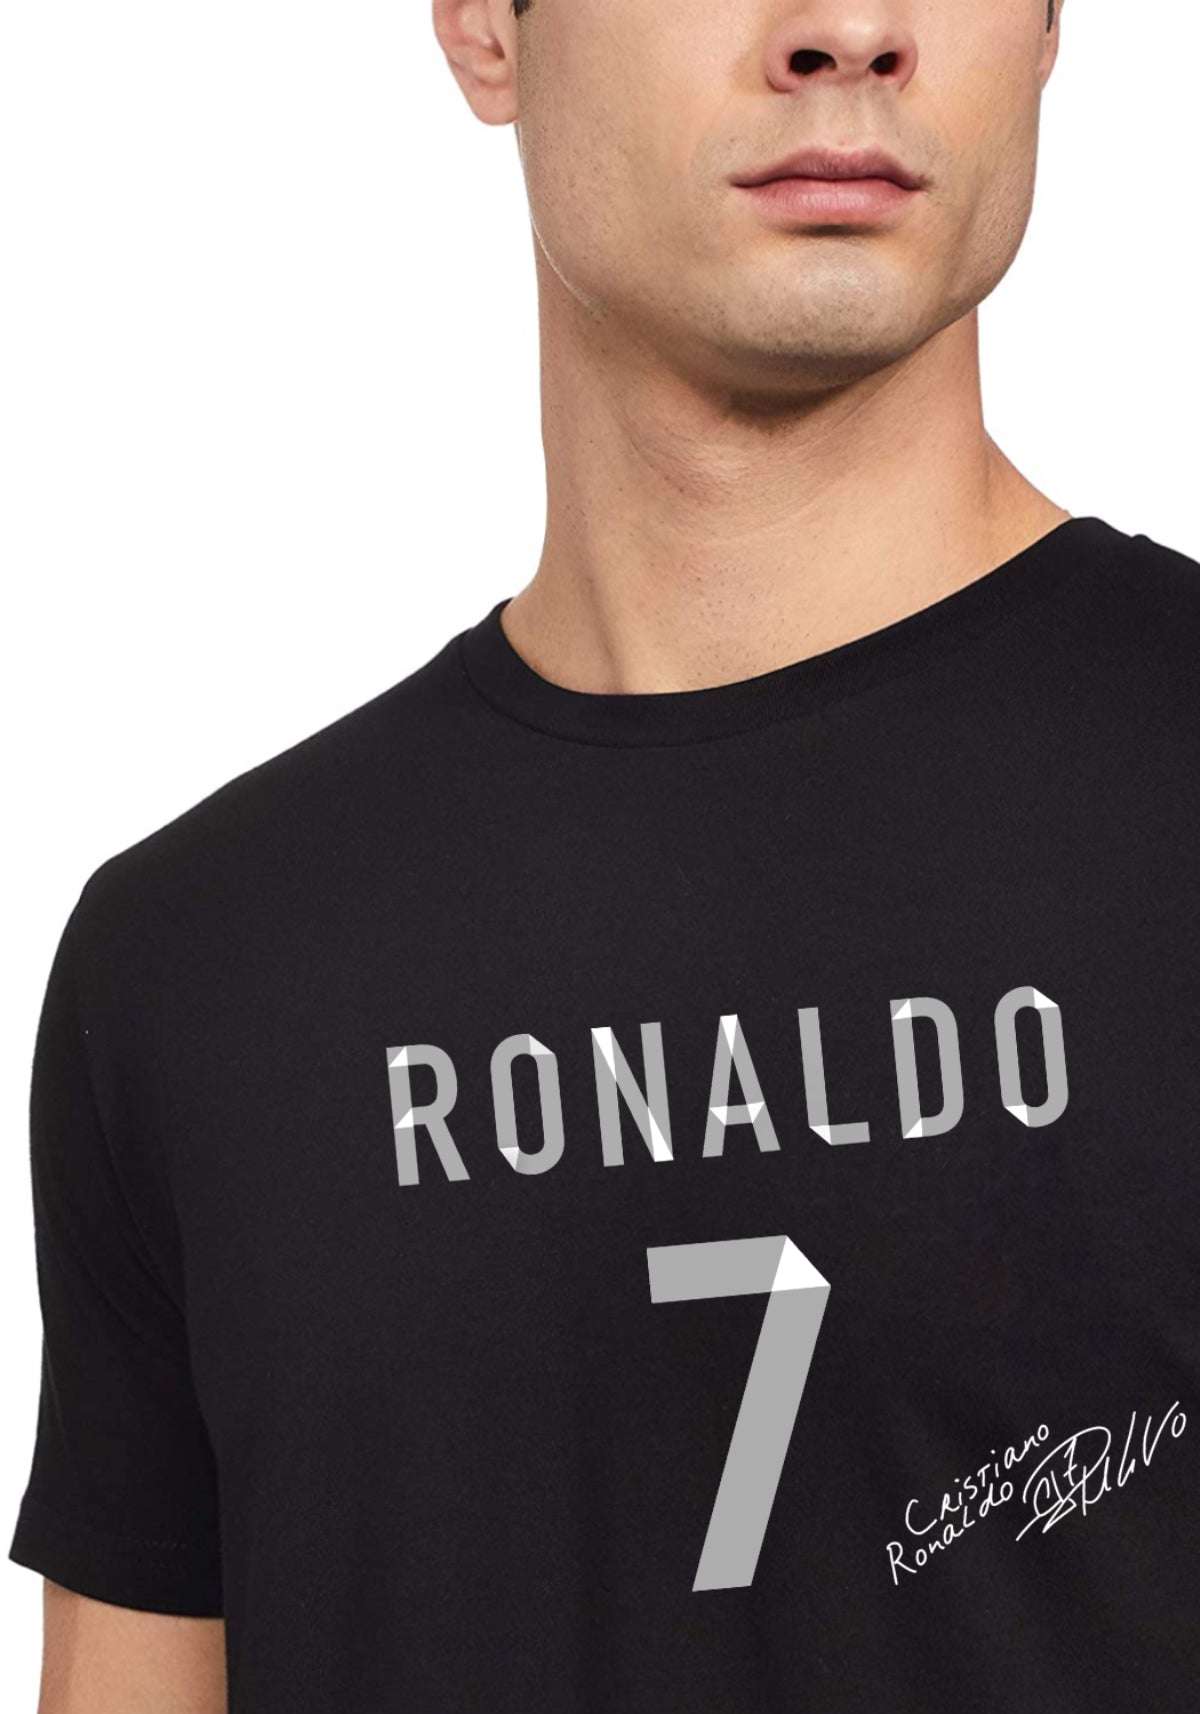 Ronaldo no. 7 Tshirt